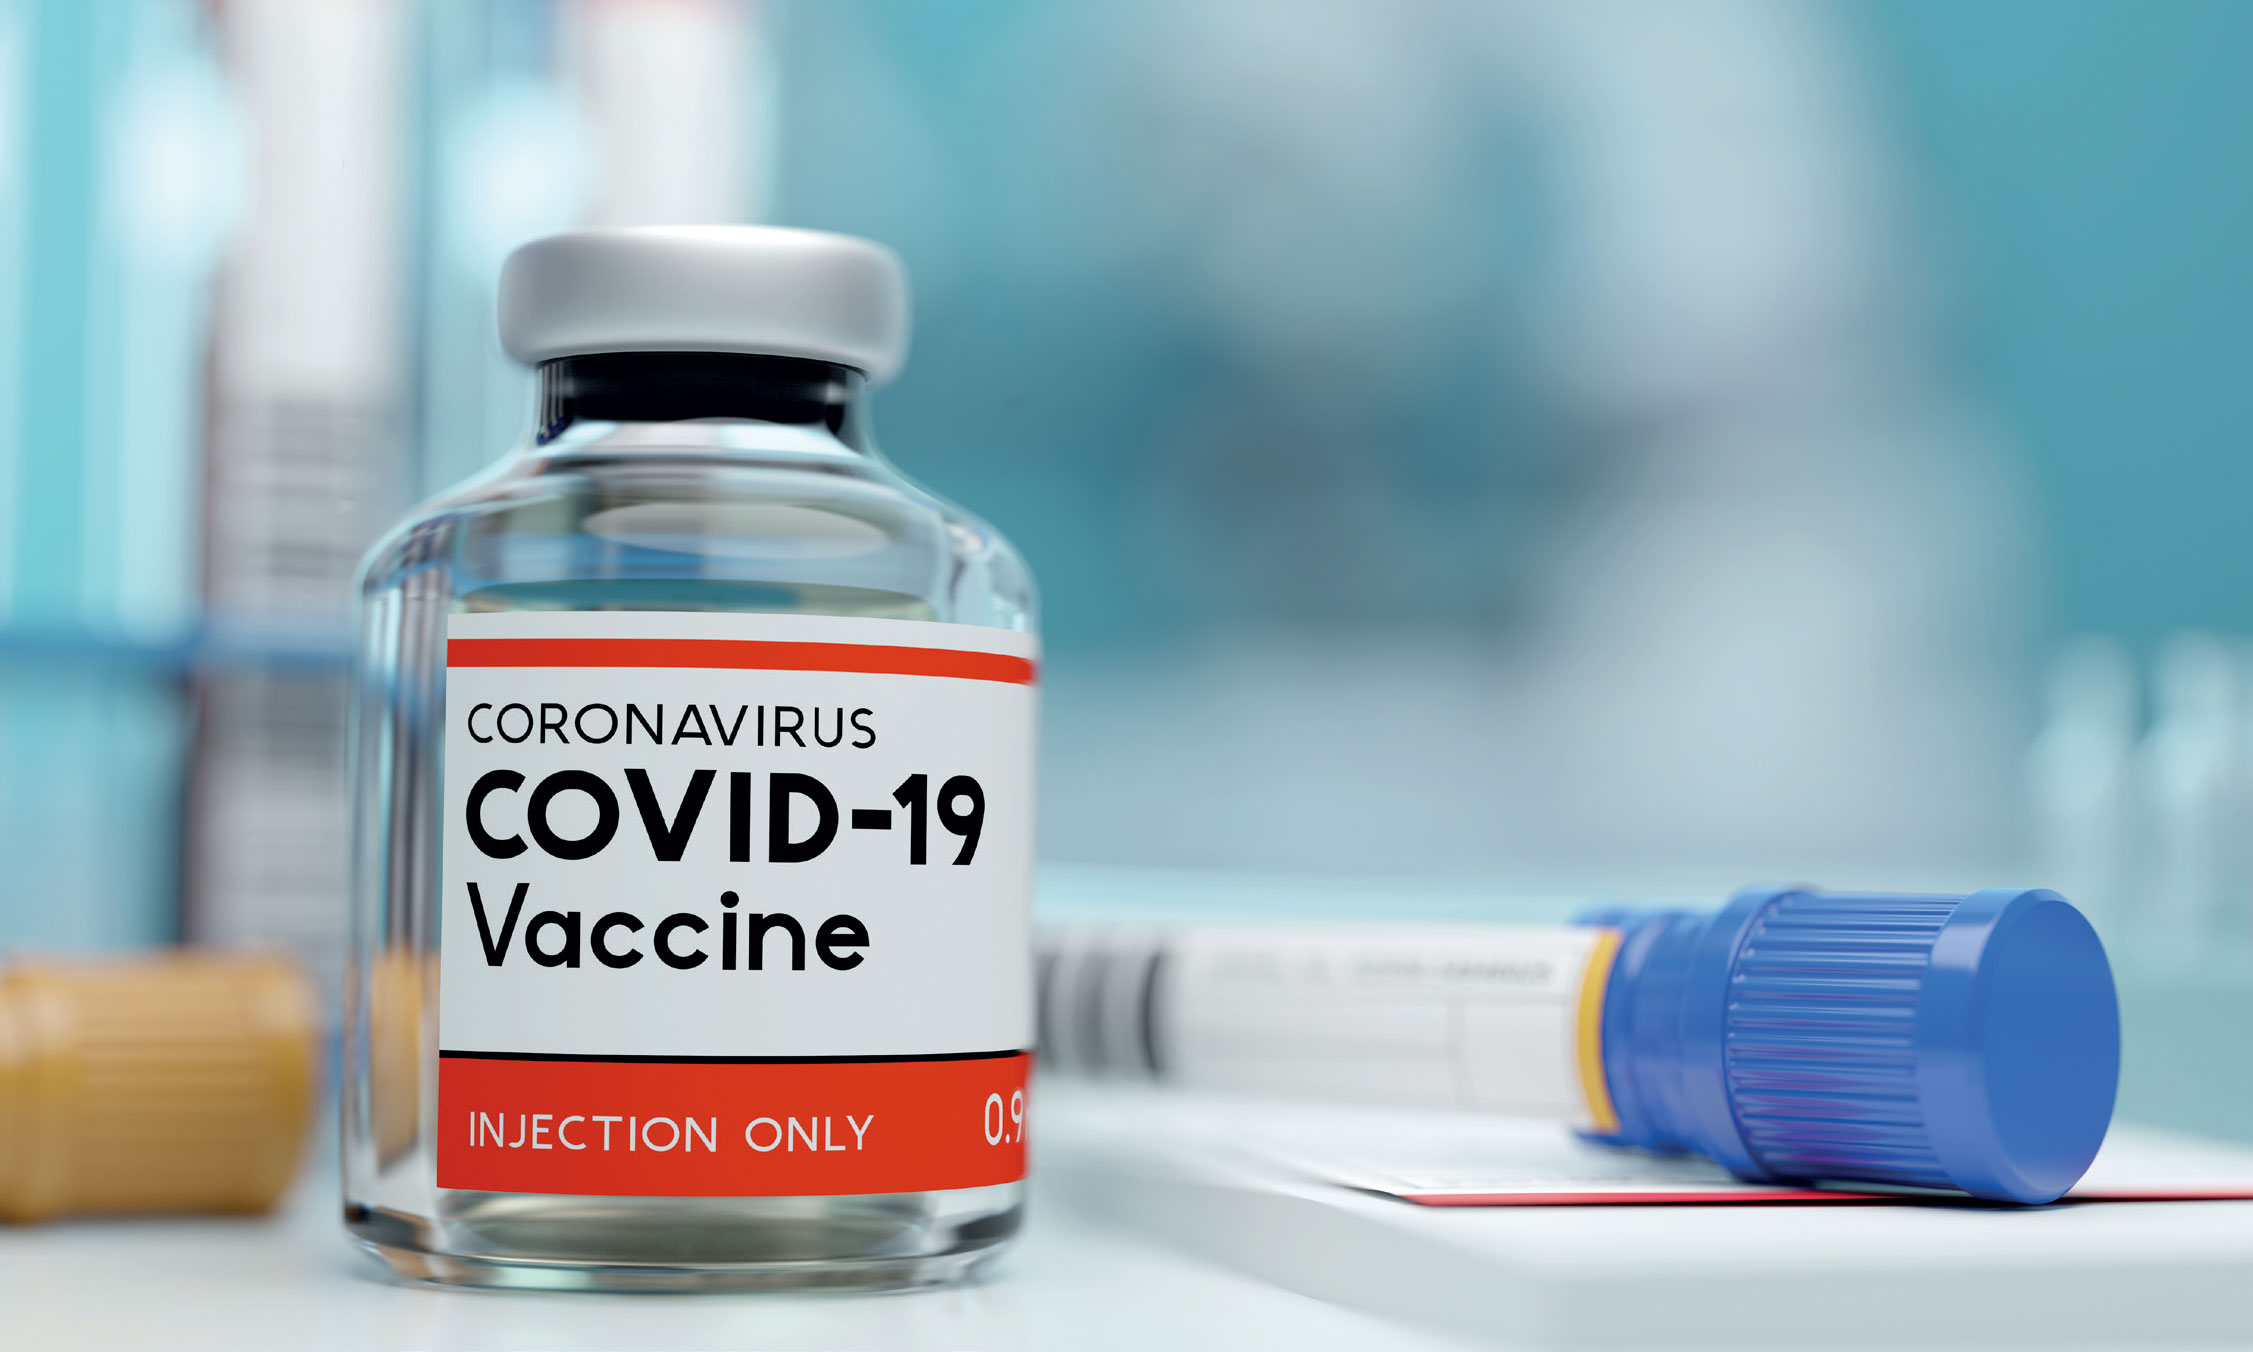 Efficacité du vaccin Covid-19: La 2ème dose administrée entre le 21ème et le 28ème jour (OMS)